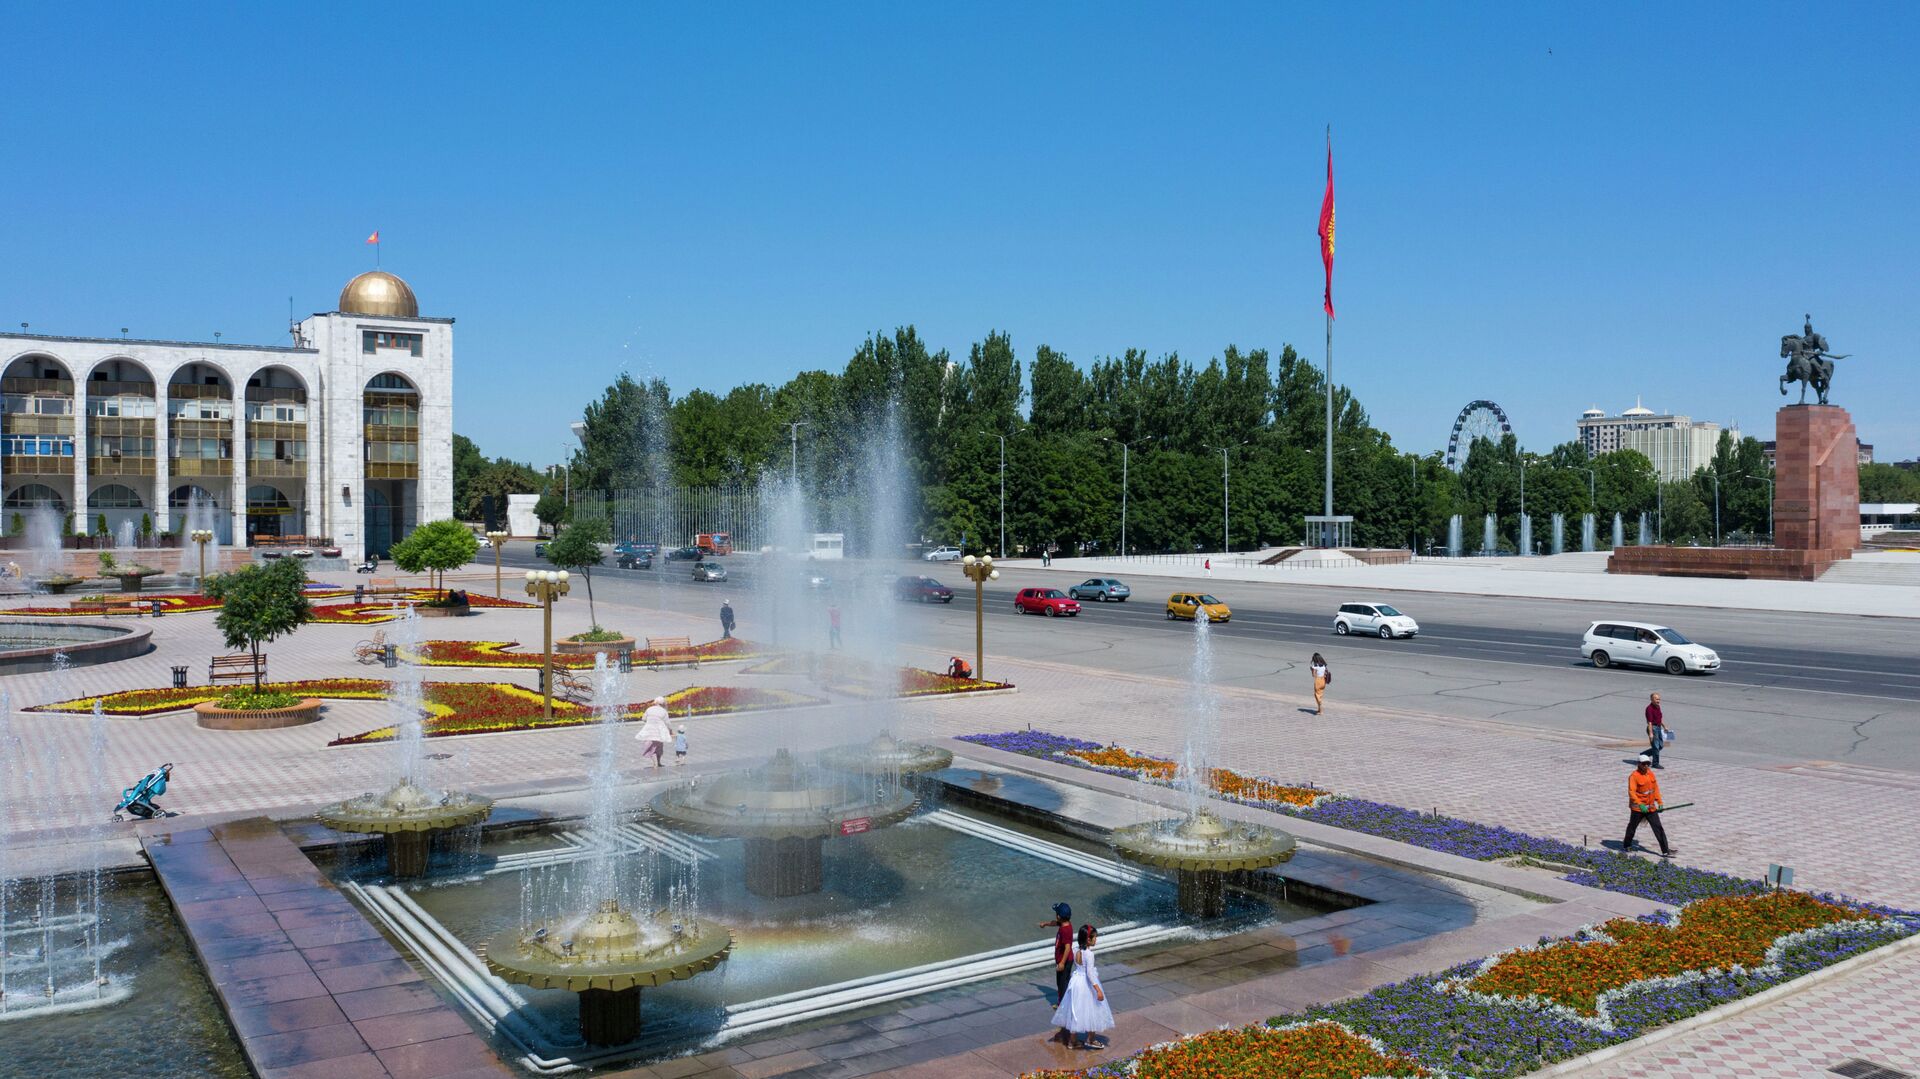 Горожане гуляют у фонтанов на площади Ала-Тоо в Бишкеке. Архивное фото - Sputnik Кыргызстан, 1920, 28.04.2021